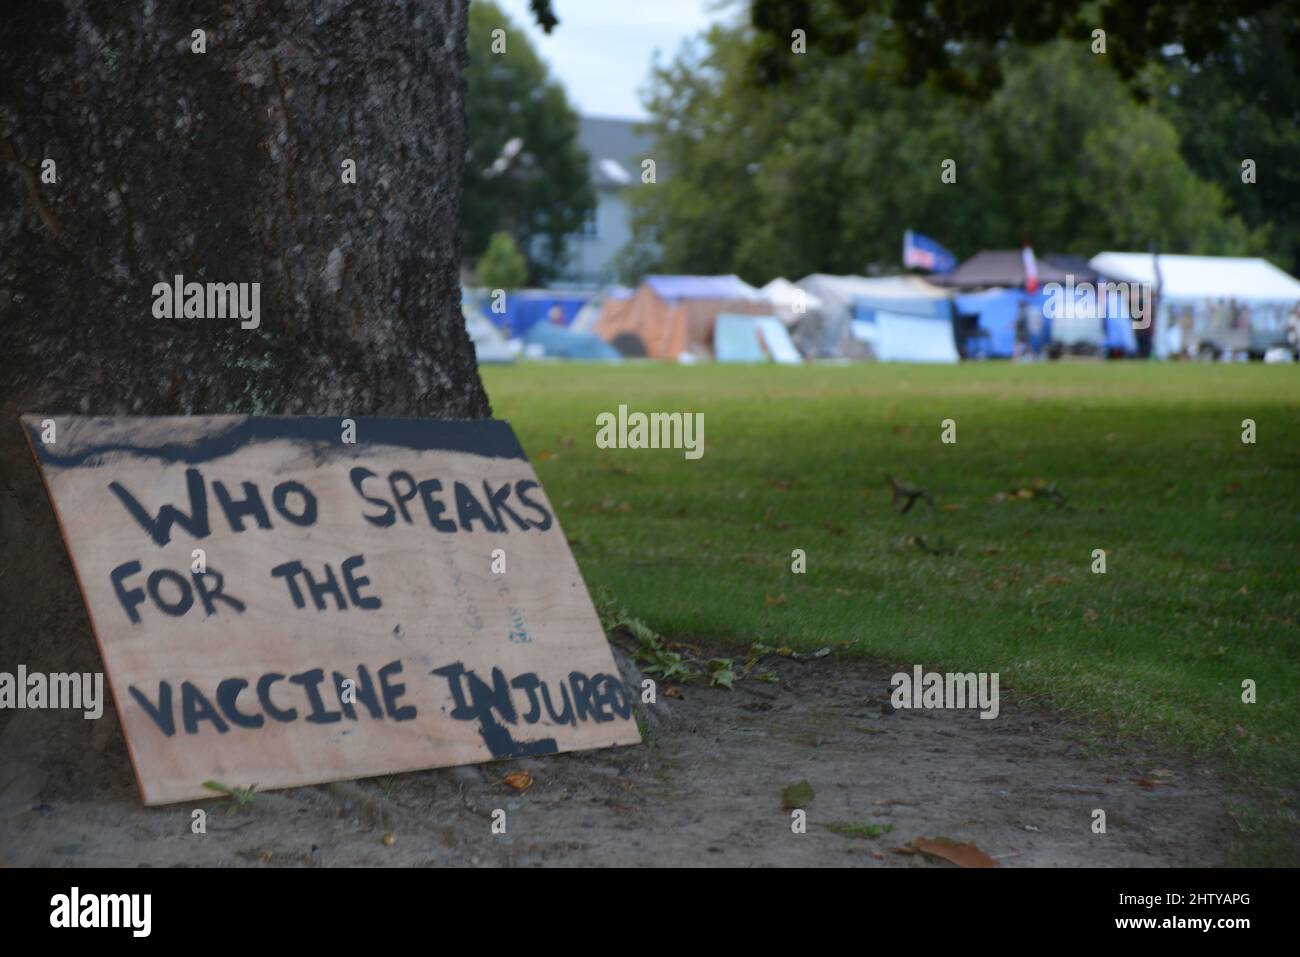 CRISTCHURCH, NOUVELLE-ZÉLANDE, 22 FÉVRIER 2022 : signalisation faite par les manifestants dans le mouvement Occupy Christchurch à Cranmer Square pour exprimer leur opposition aux mandats de vaccination. Banque D'Images